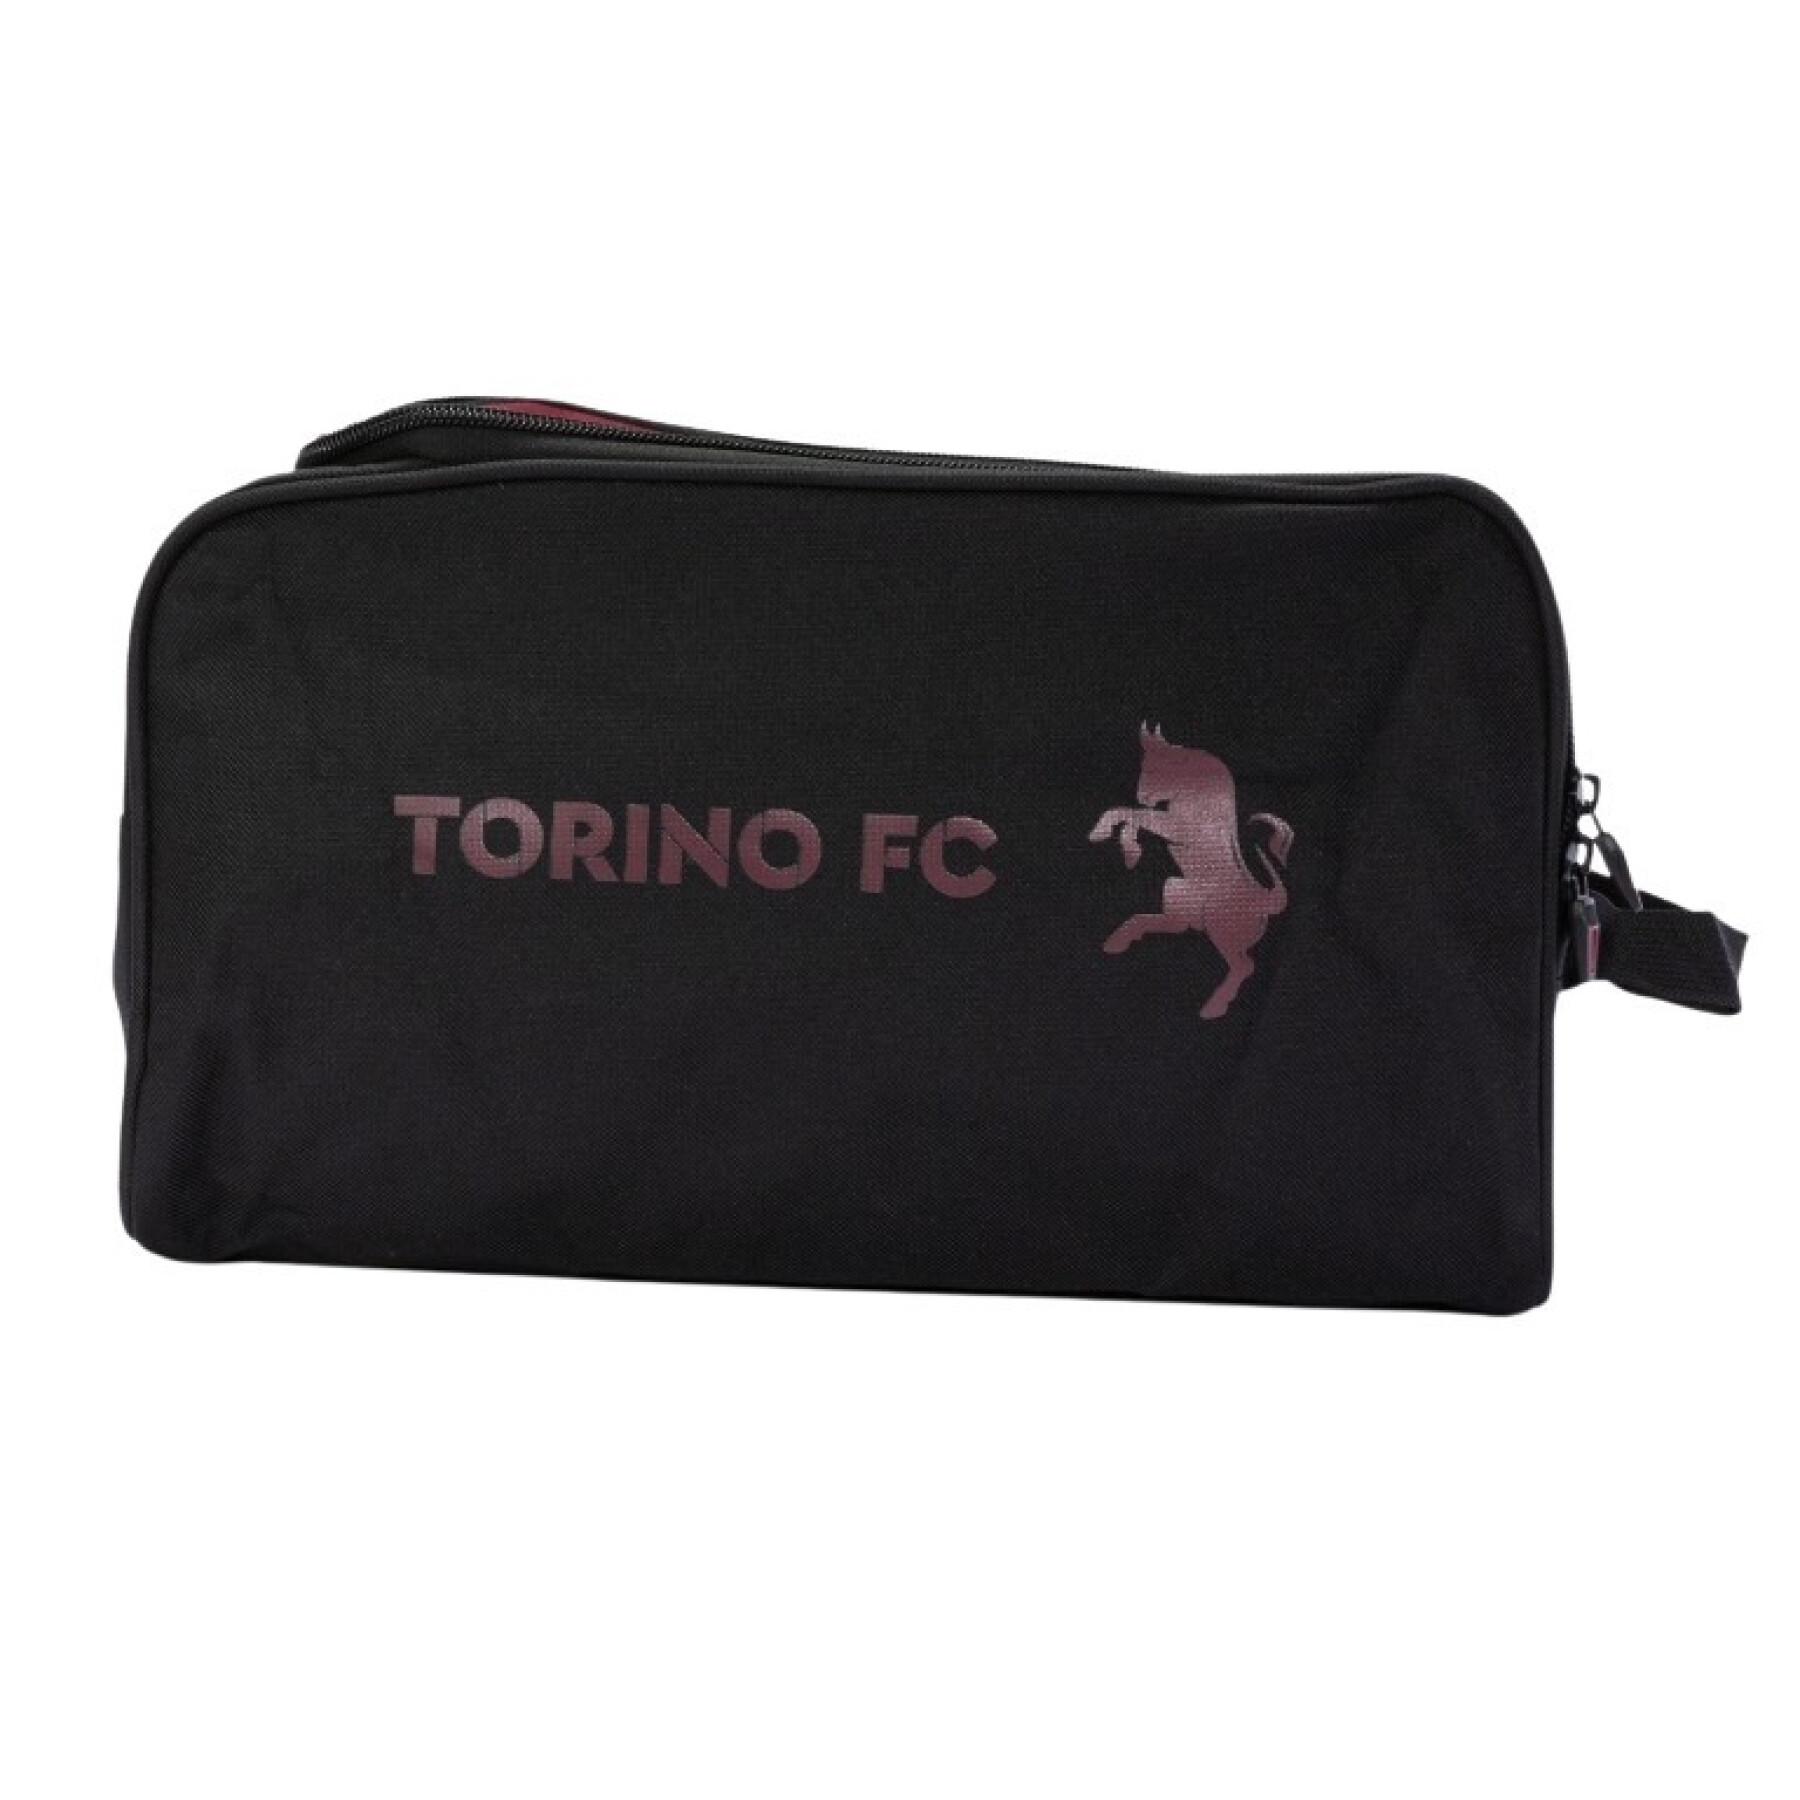 Borsa delle scarpe Torino FC 2020/21